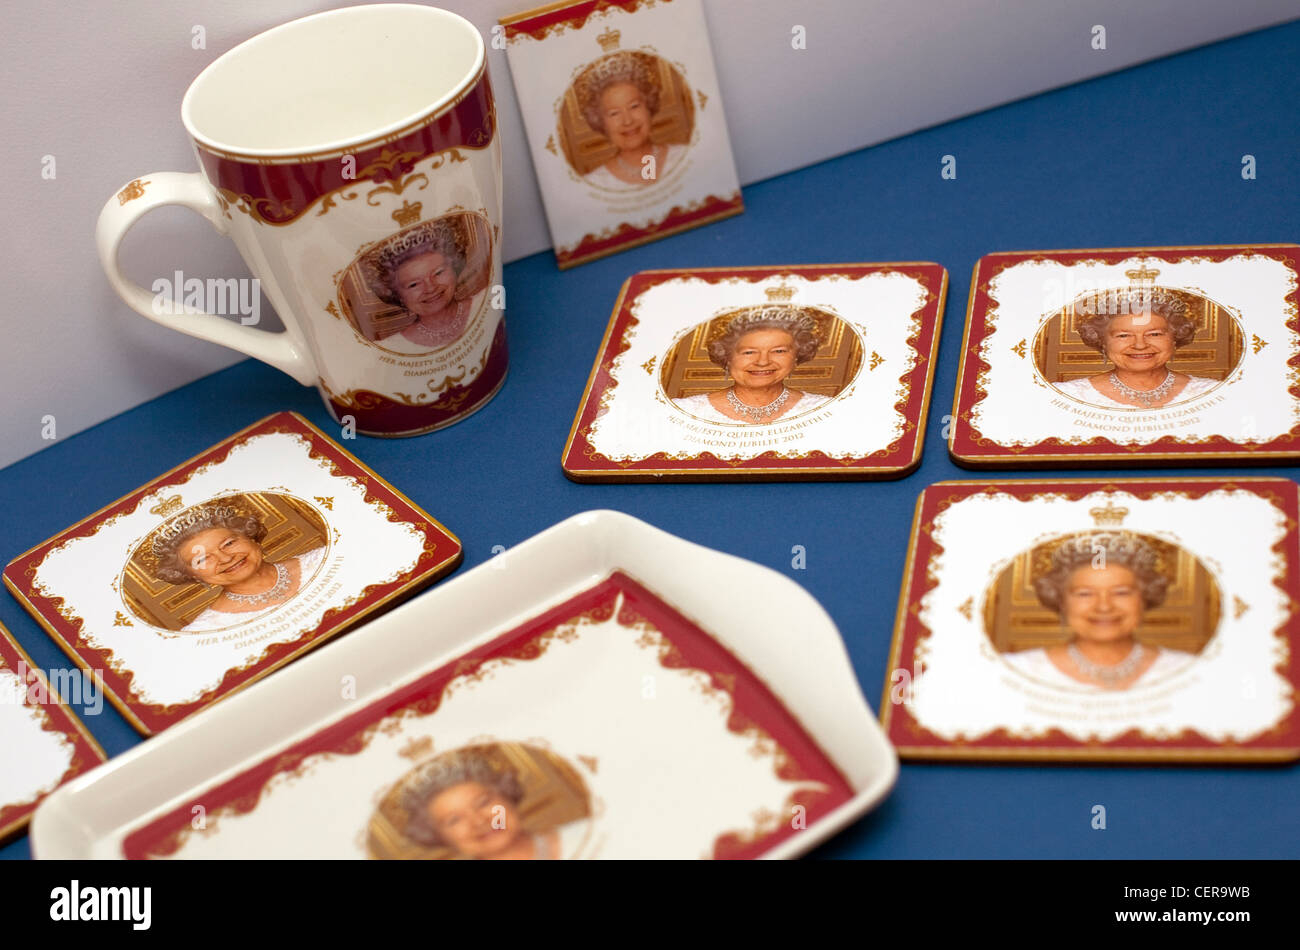 Queen Elizabeth II Diamond Jubilee souvenirs, London 2012 Stock Photo